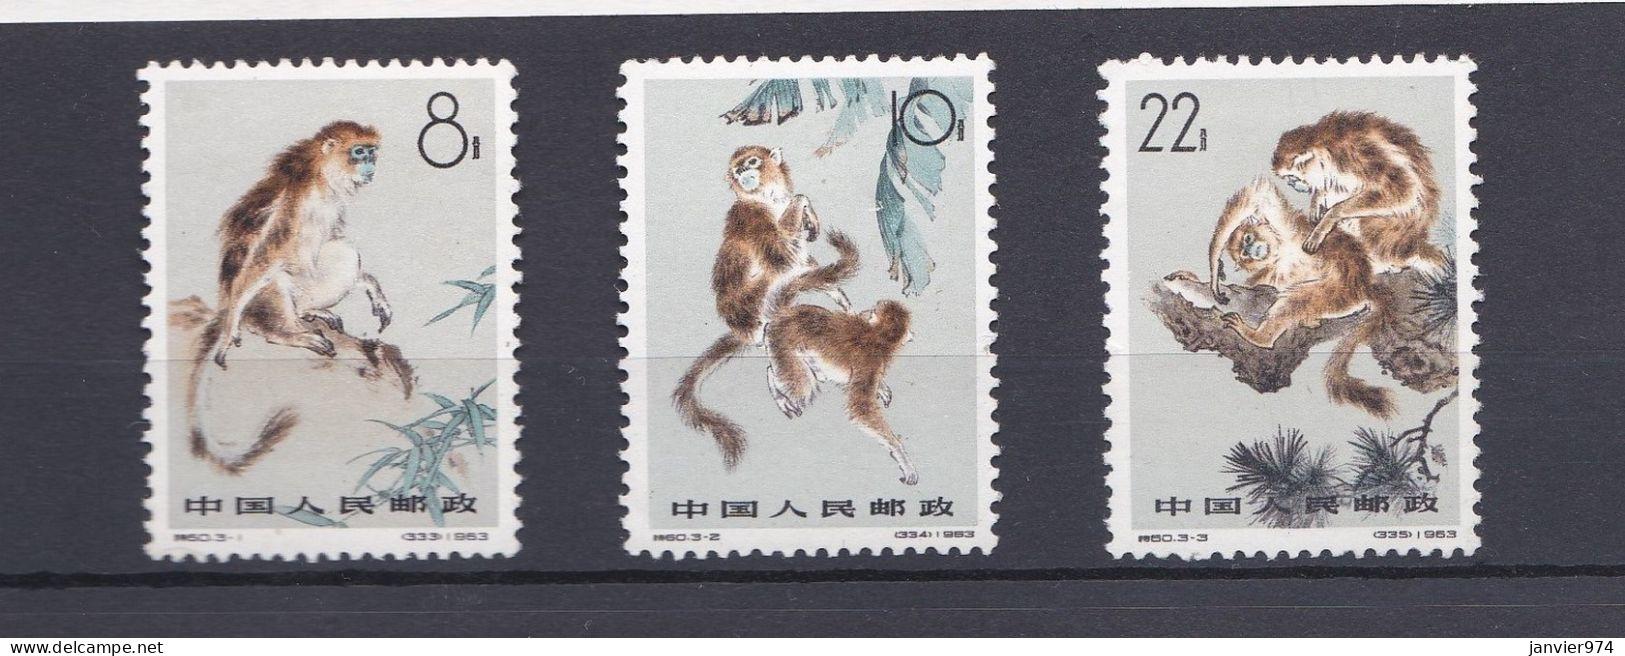 Chine 1963 La Série Complète 741 à 743, Monkeys Singe. 3 Timbres Neufs  Scan Recto Verso - Unused Stamps